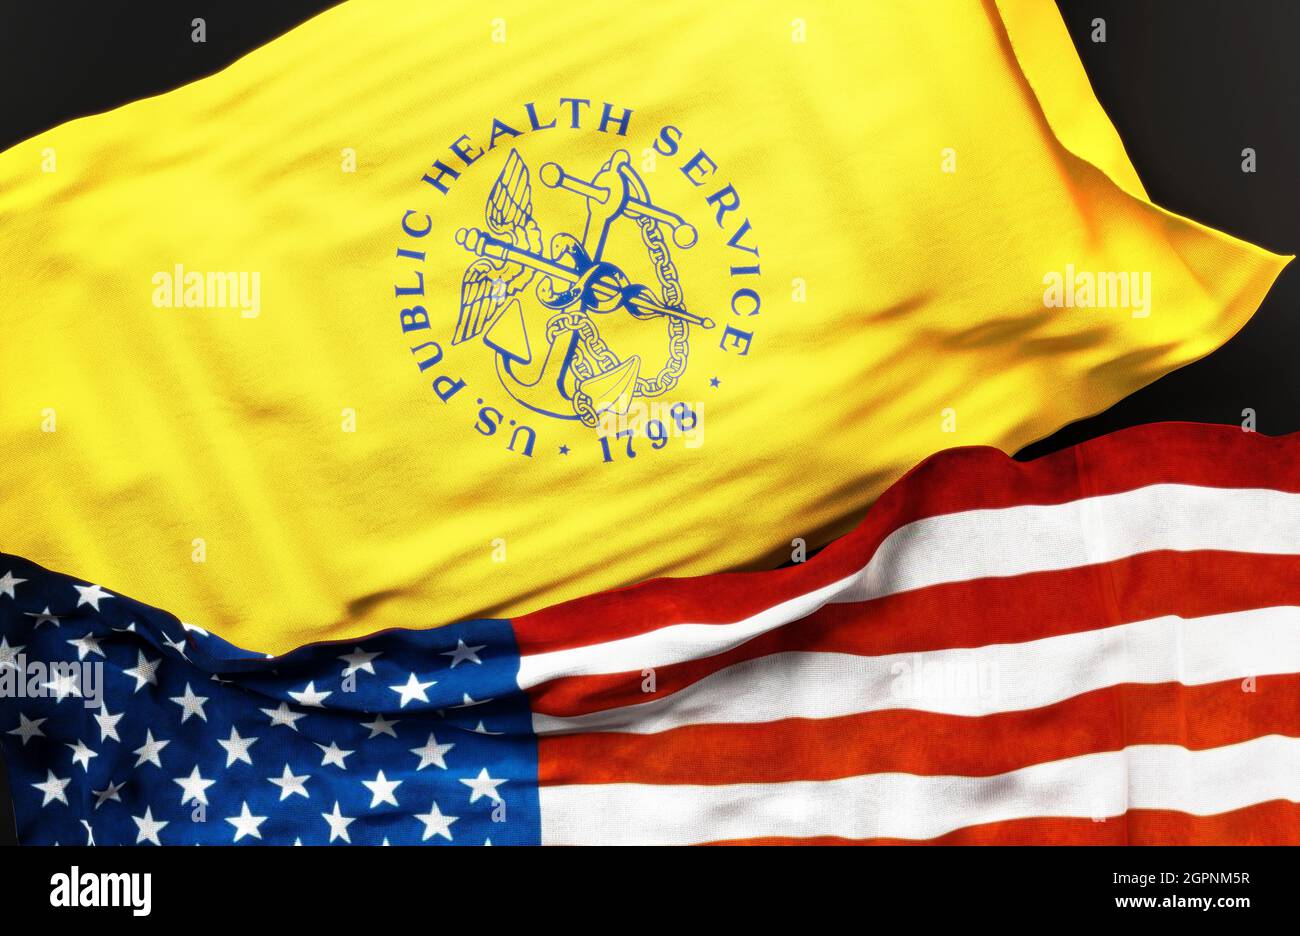 Flagge des US Public Health Service zusammen mit einer Flagge der Vereinigten Staaten von Amerika als Symbol der Einheit zwischen ihnen, 3d-Illustration Stockfoto